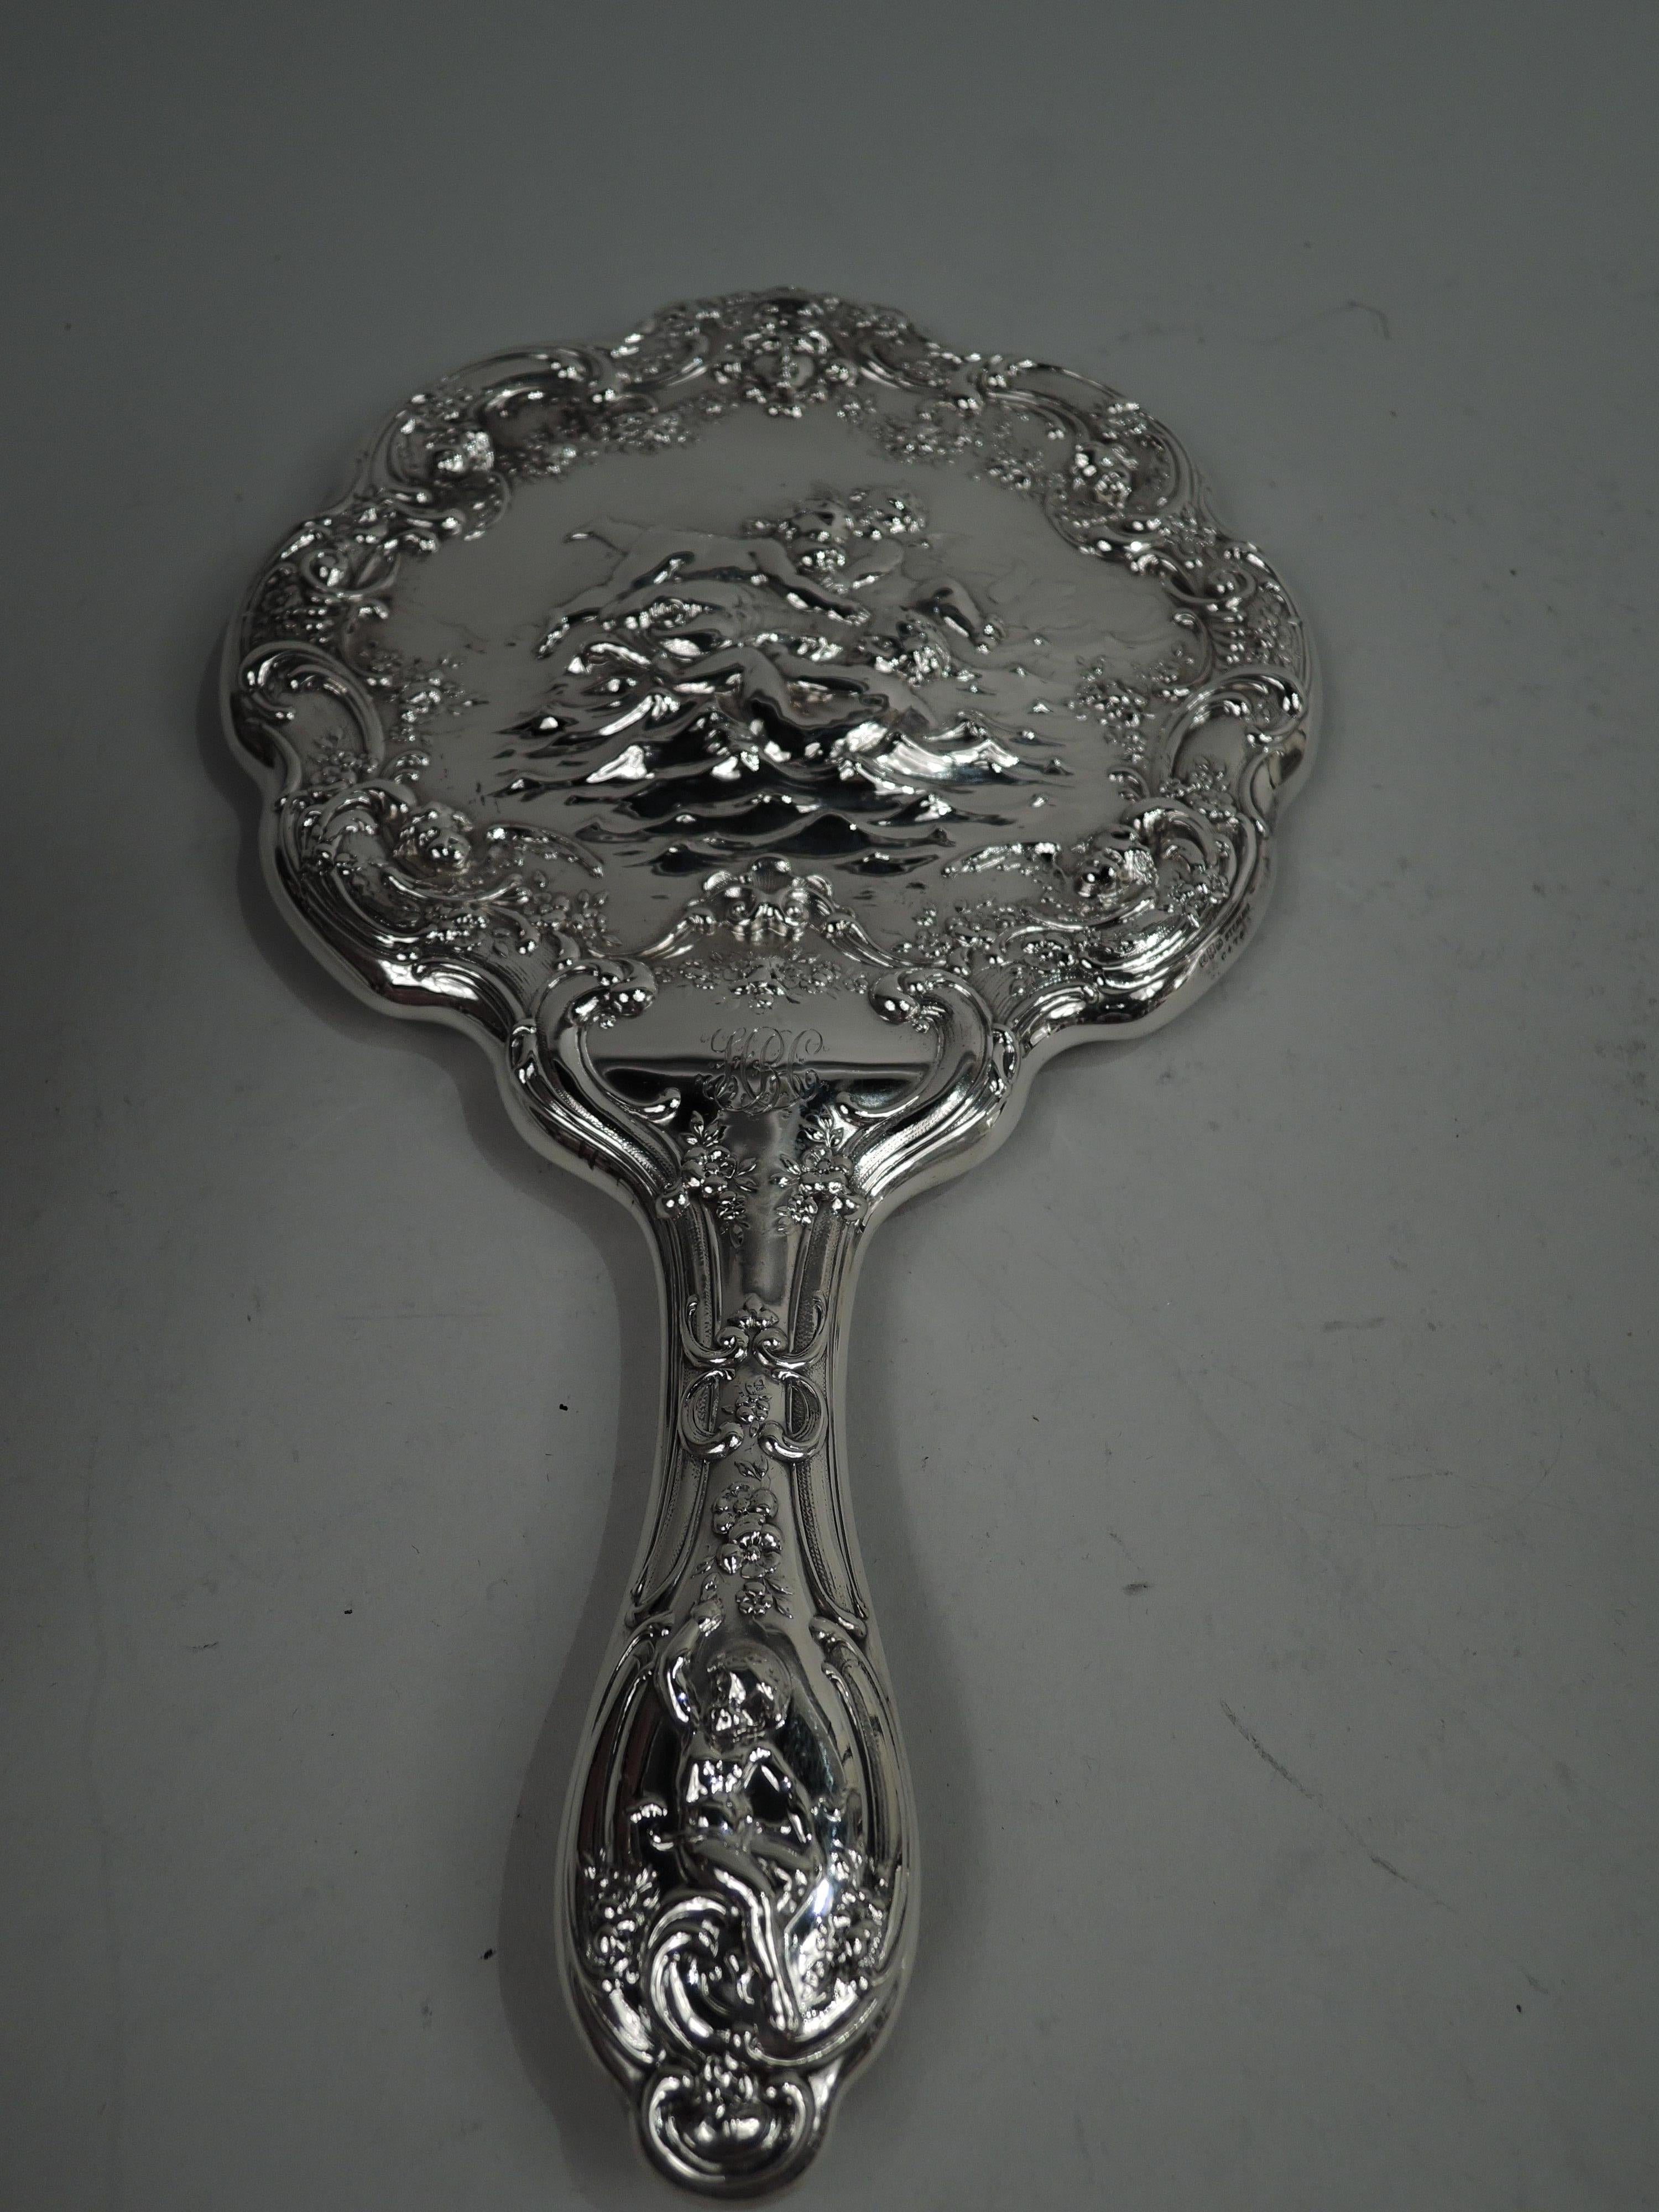 Paire de vanités en argent sterling de style classique édouardien. Fabriqué par Gorham à Providence, vers 1900. Cette paire comprend un miroir à main et une brosse à cheveux. Le miroir a un cadre rond et festonné et la brosse a un cadre ovale.